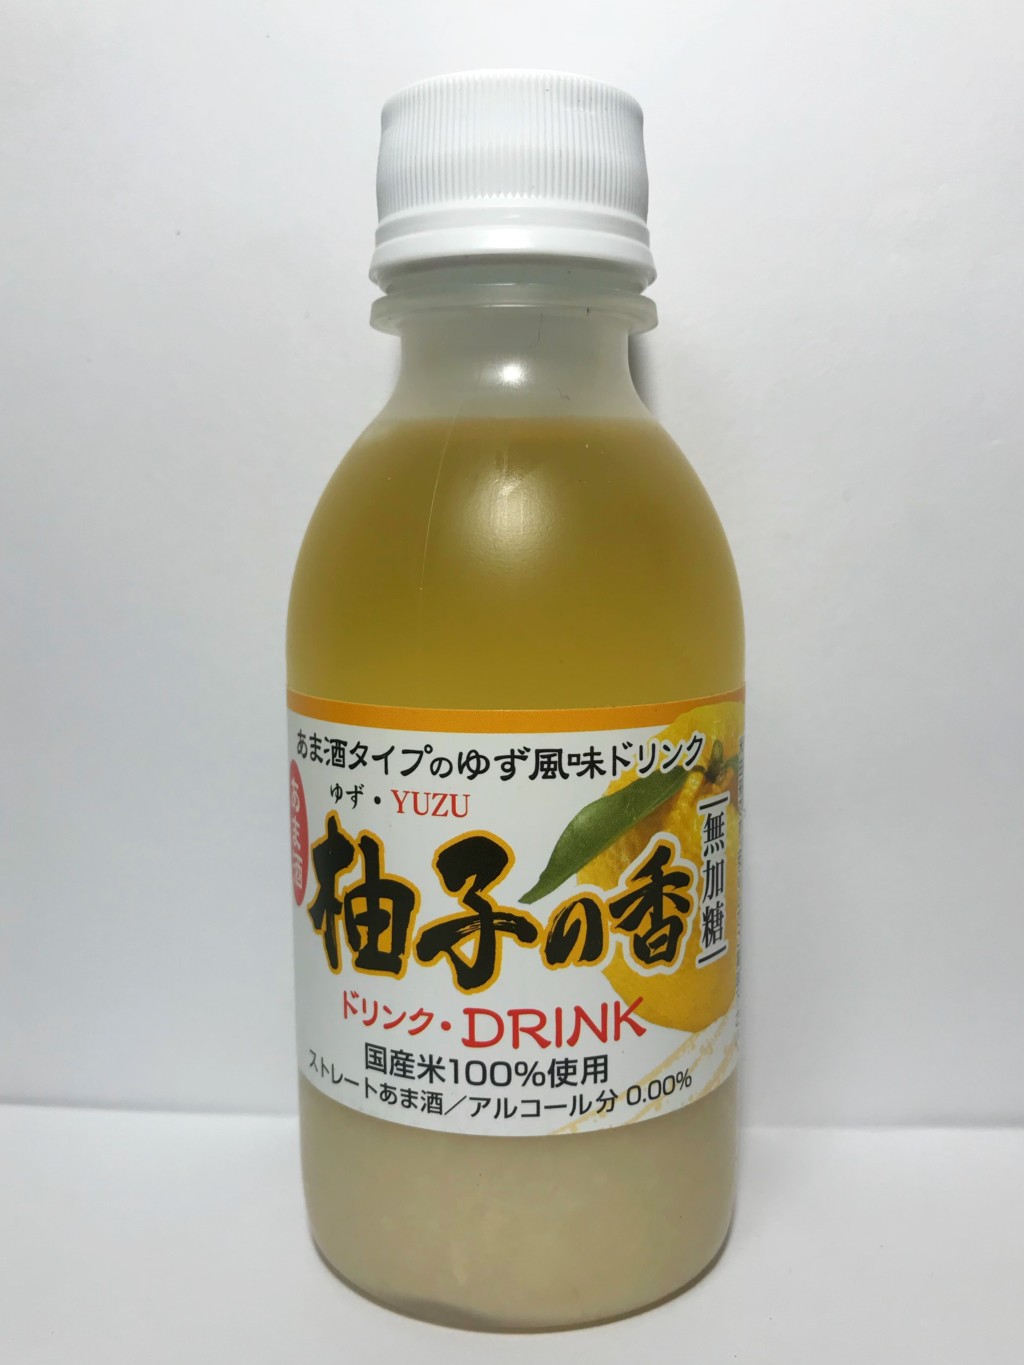 千日みその柚子果汁を添加した米麹甘酒『あま酒柚子の香』